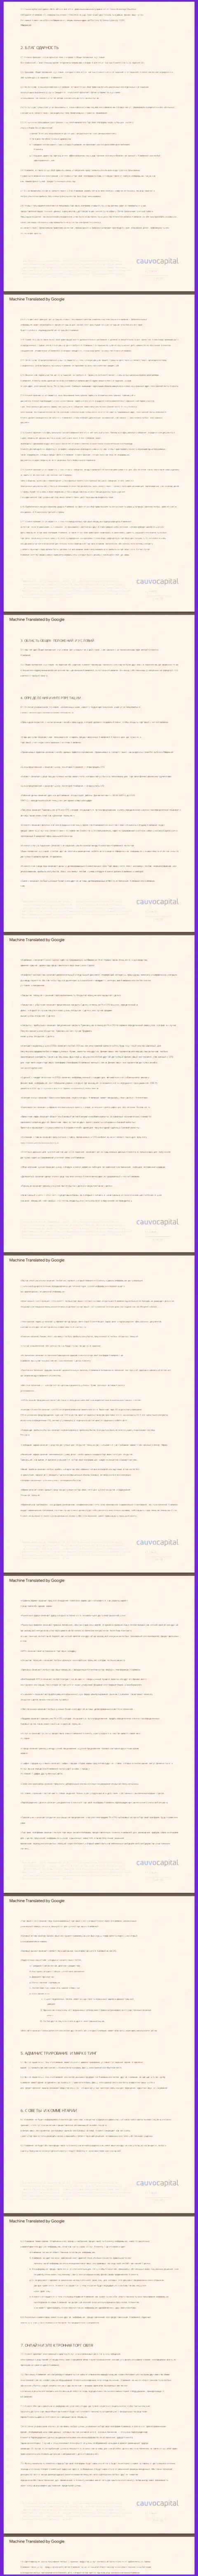 Часть первая клиентского соглашения организации CauvoCapital Com